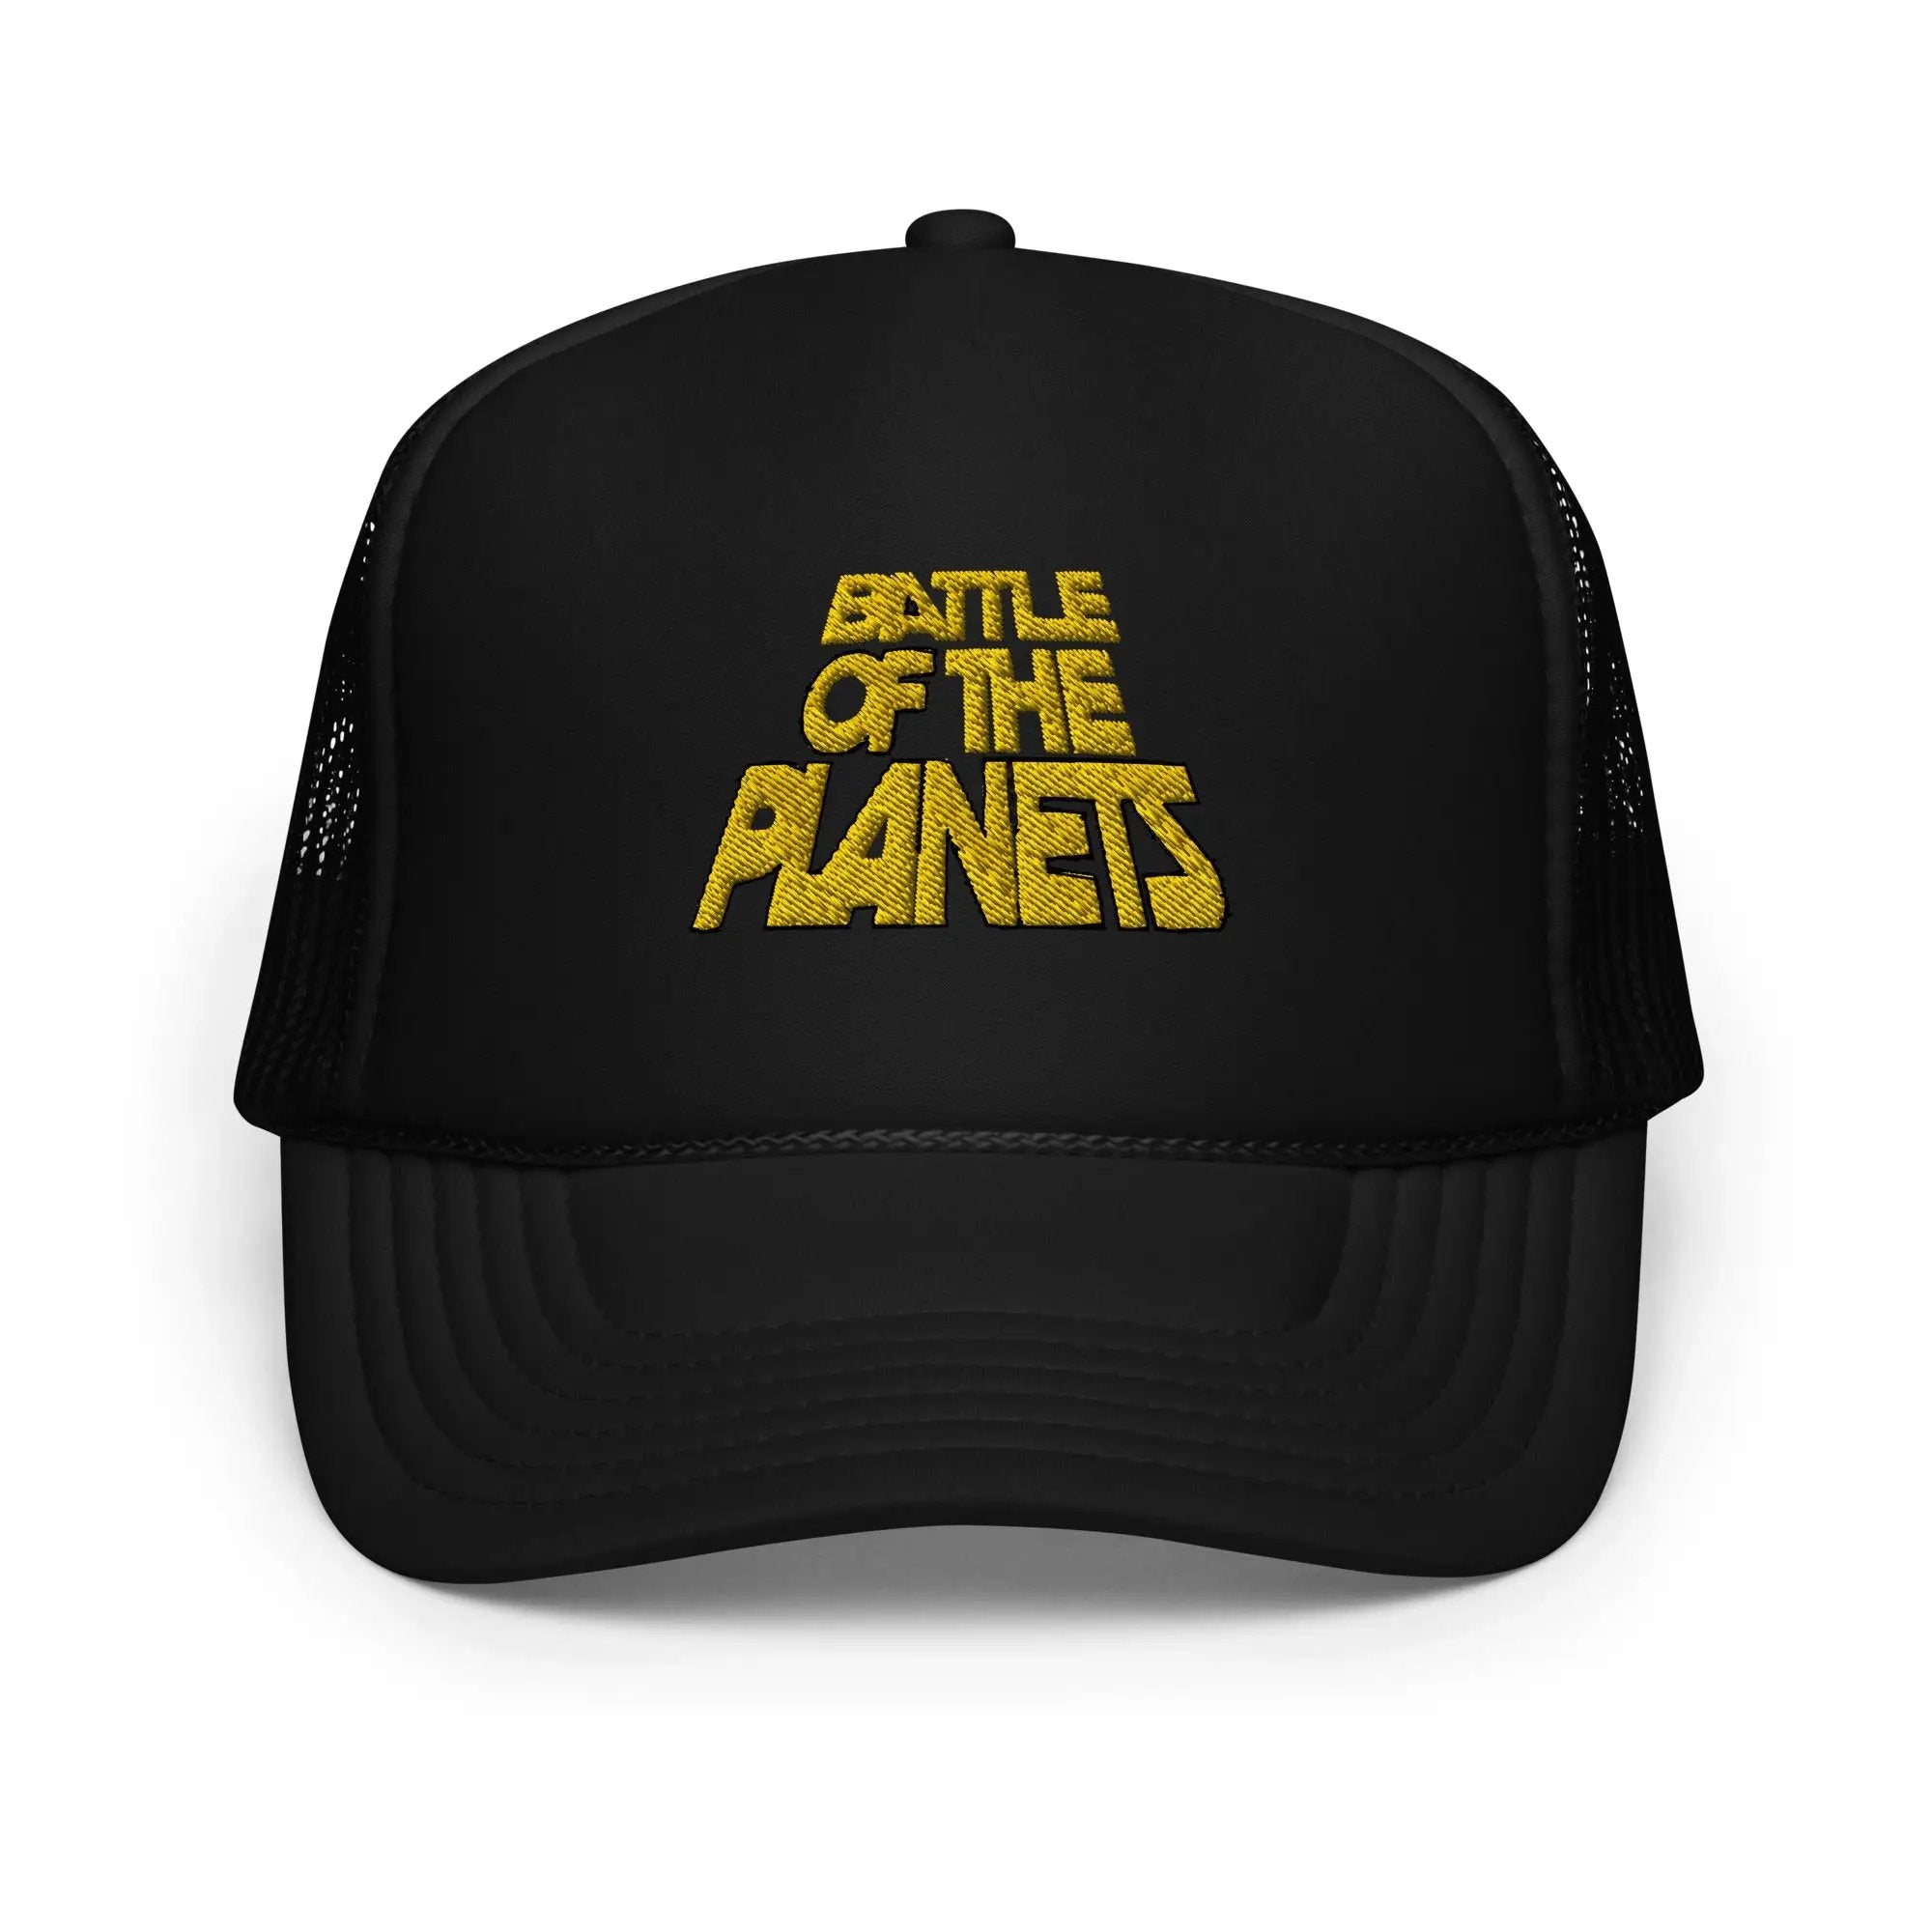 Battle Of The Planets Foam trucker hat